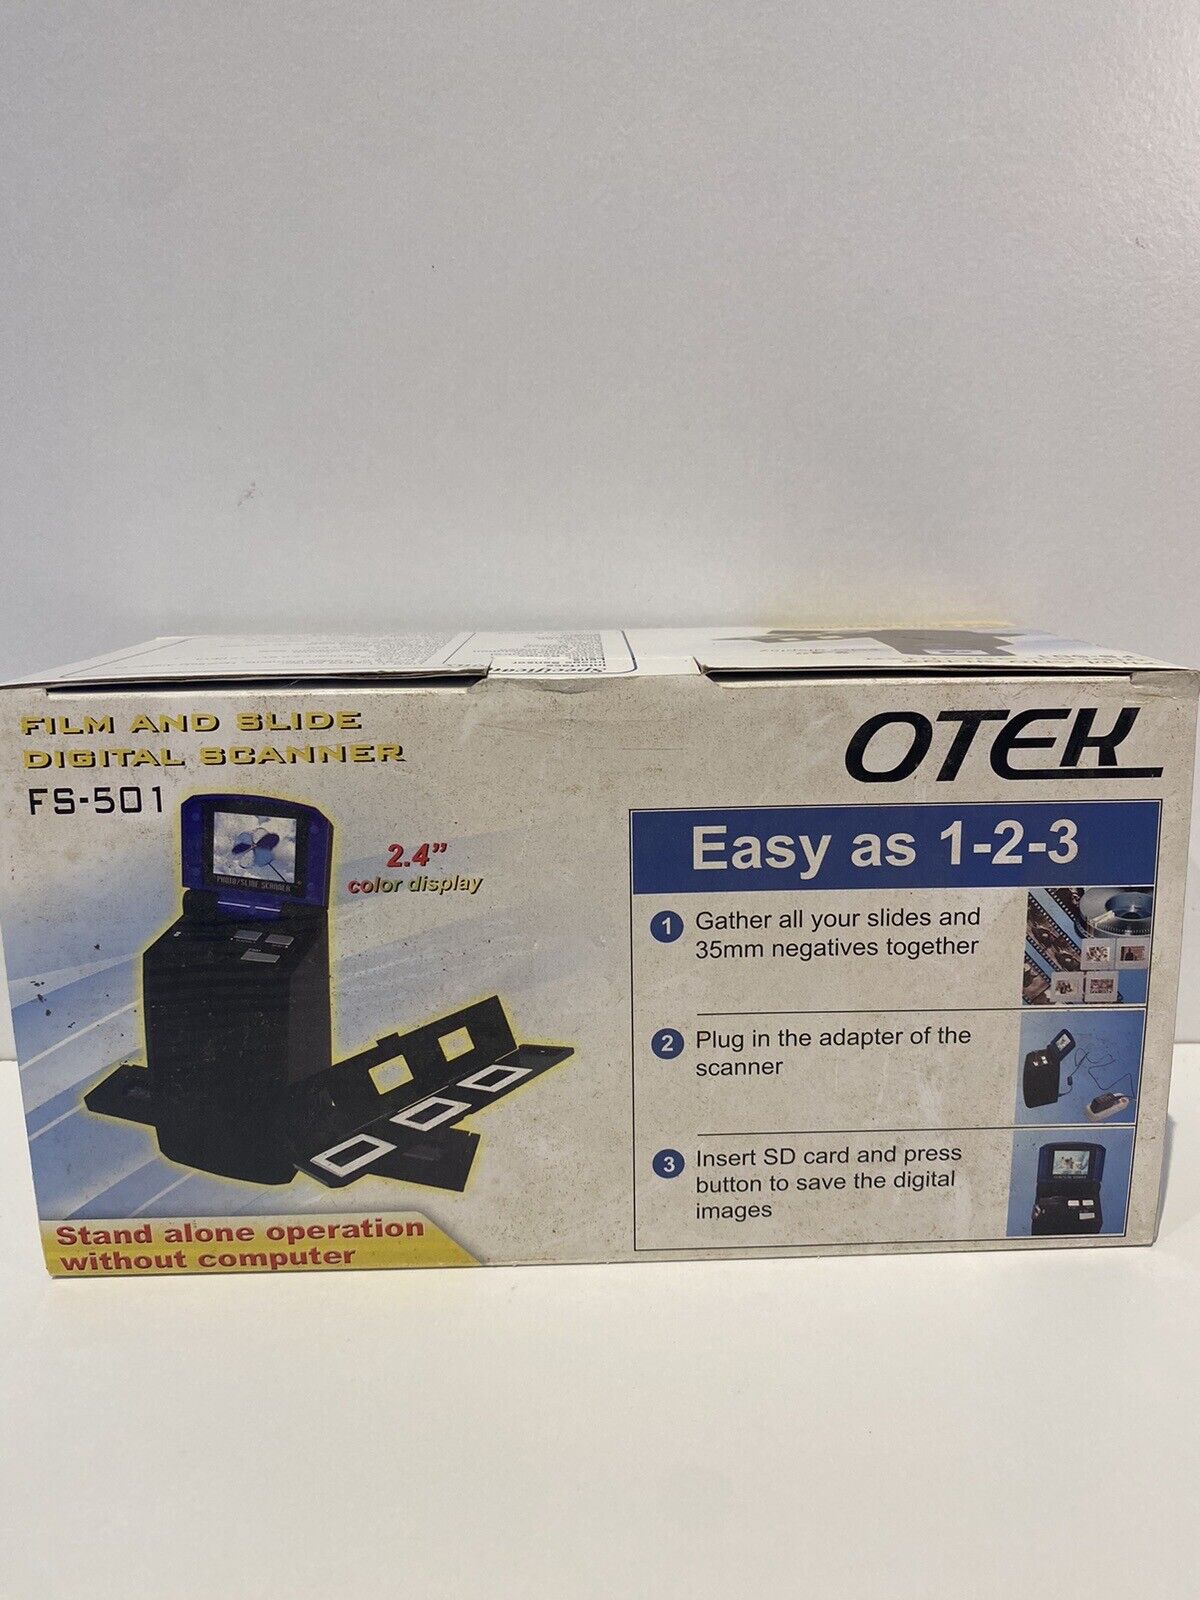 Otek Film And Slide Digital Scanner FS-501 2.4” LCD Panel 5MP For 35mm Film P1